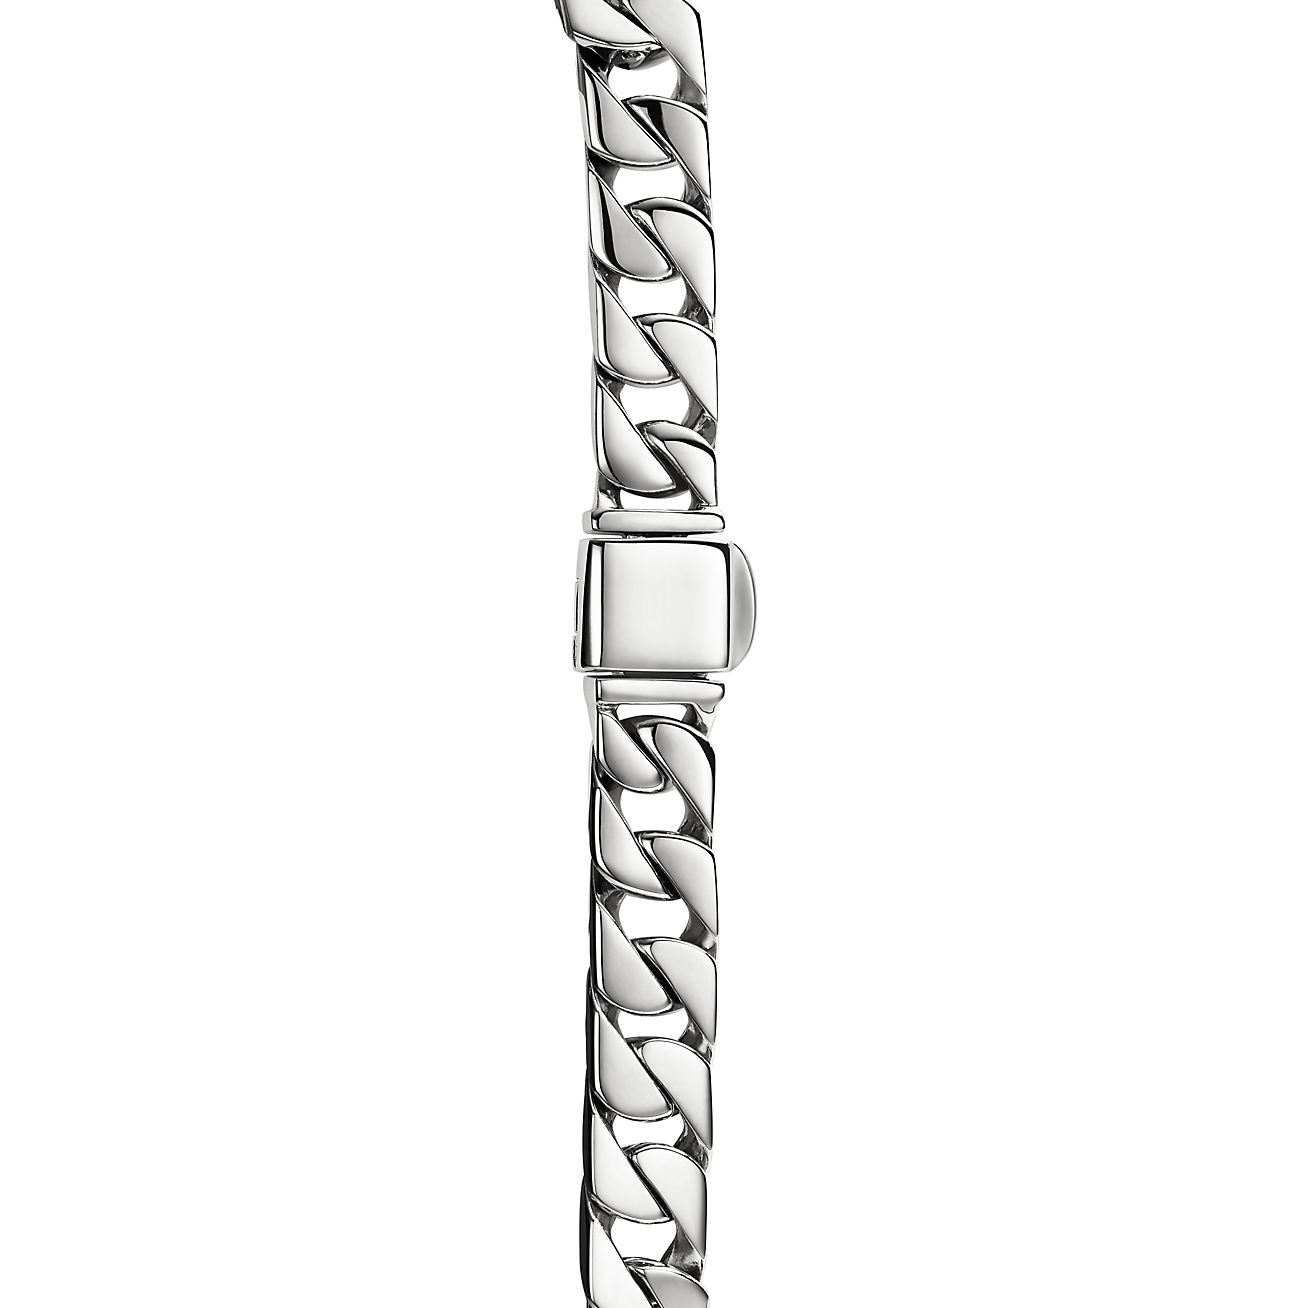 Sterling Silver Men's Curb Bracelet